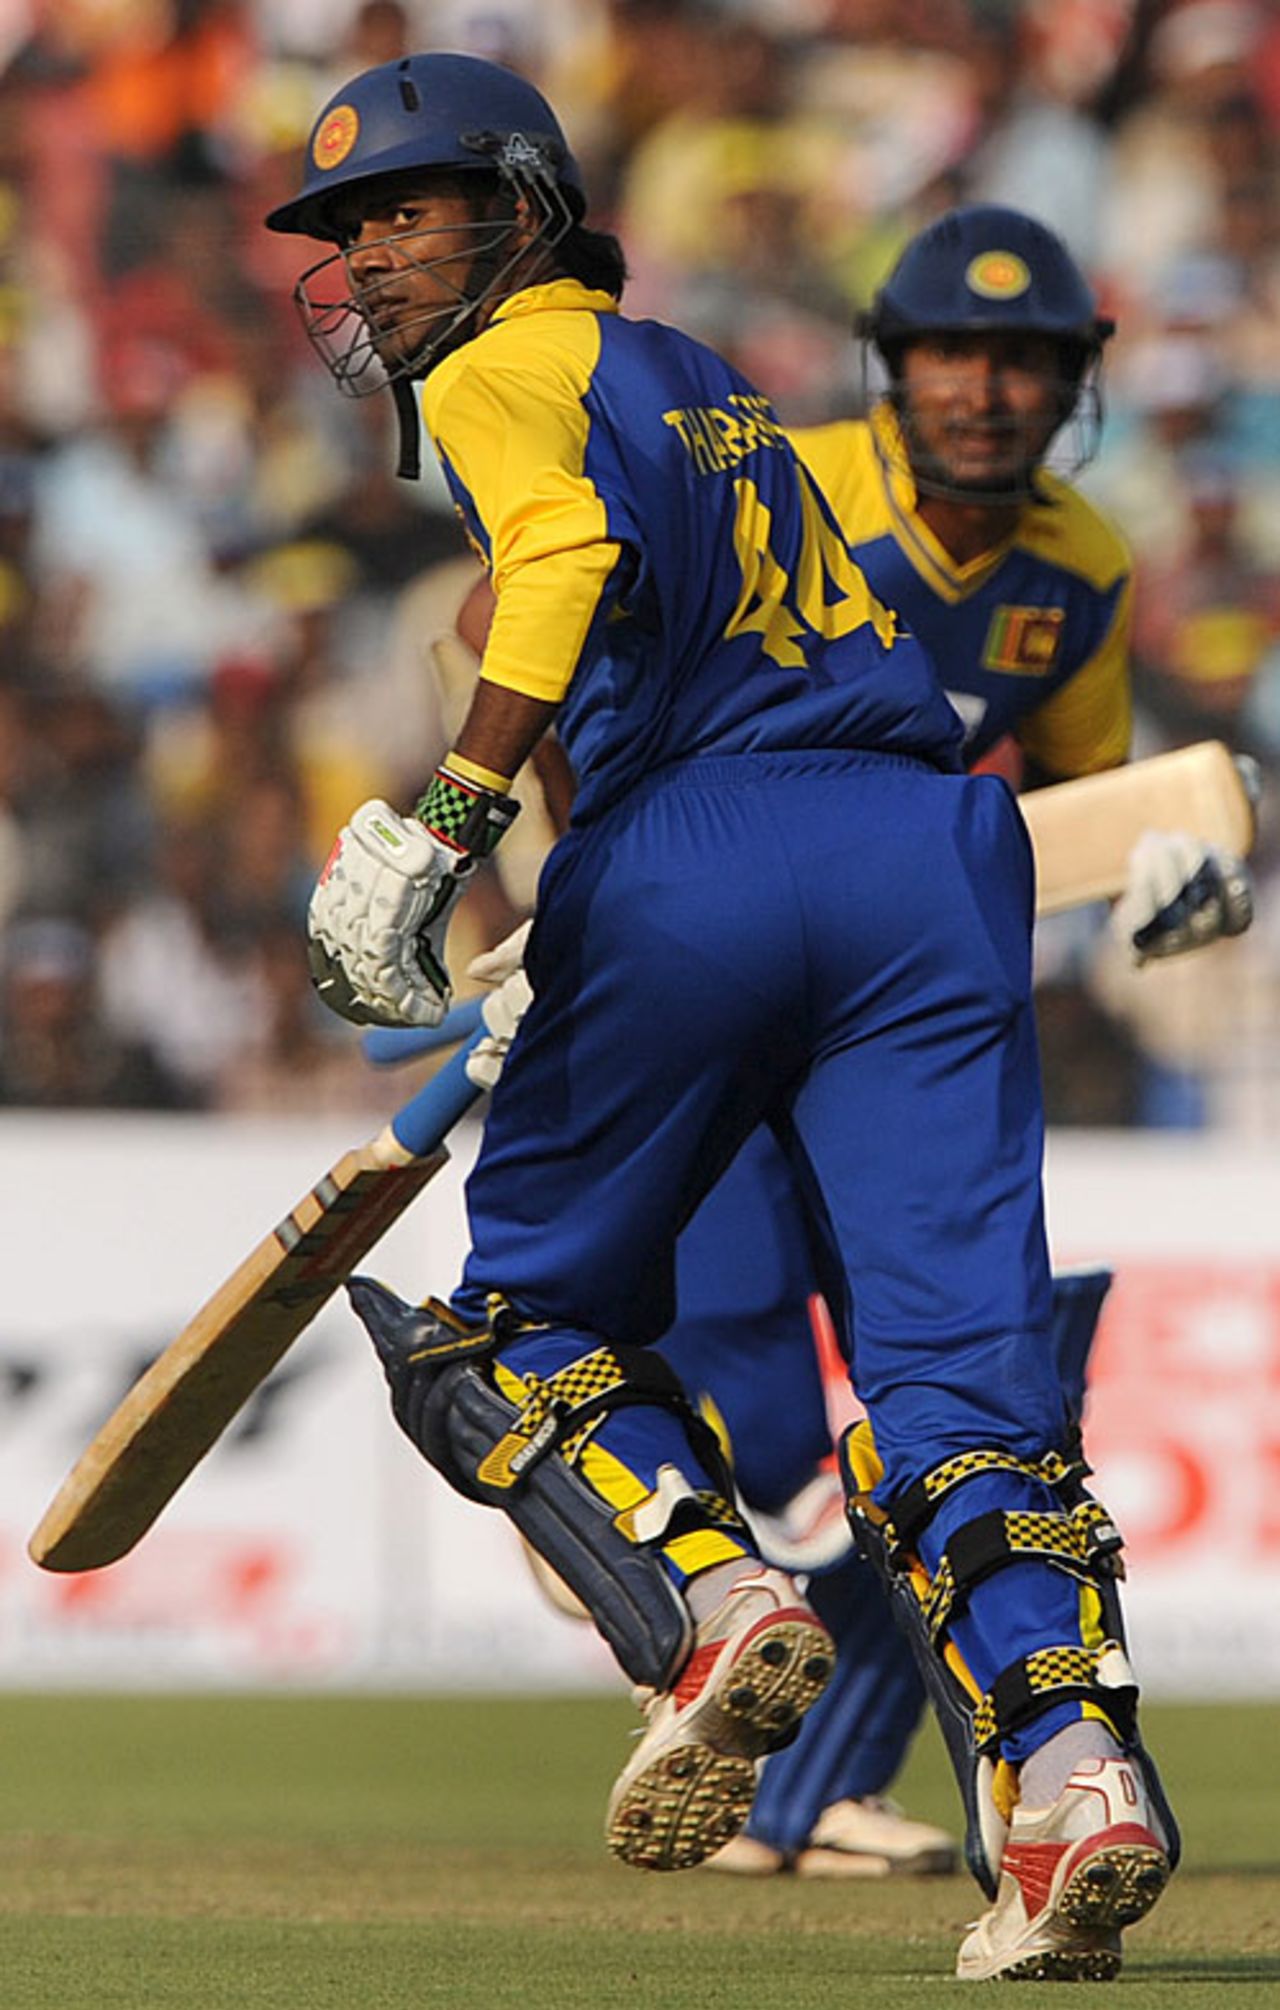 Upul Tharanga and Kumar Sangakkara run hard, India v Sri Lanka, 3rd ODI, Cuttack, December 21, 2009